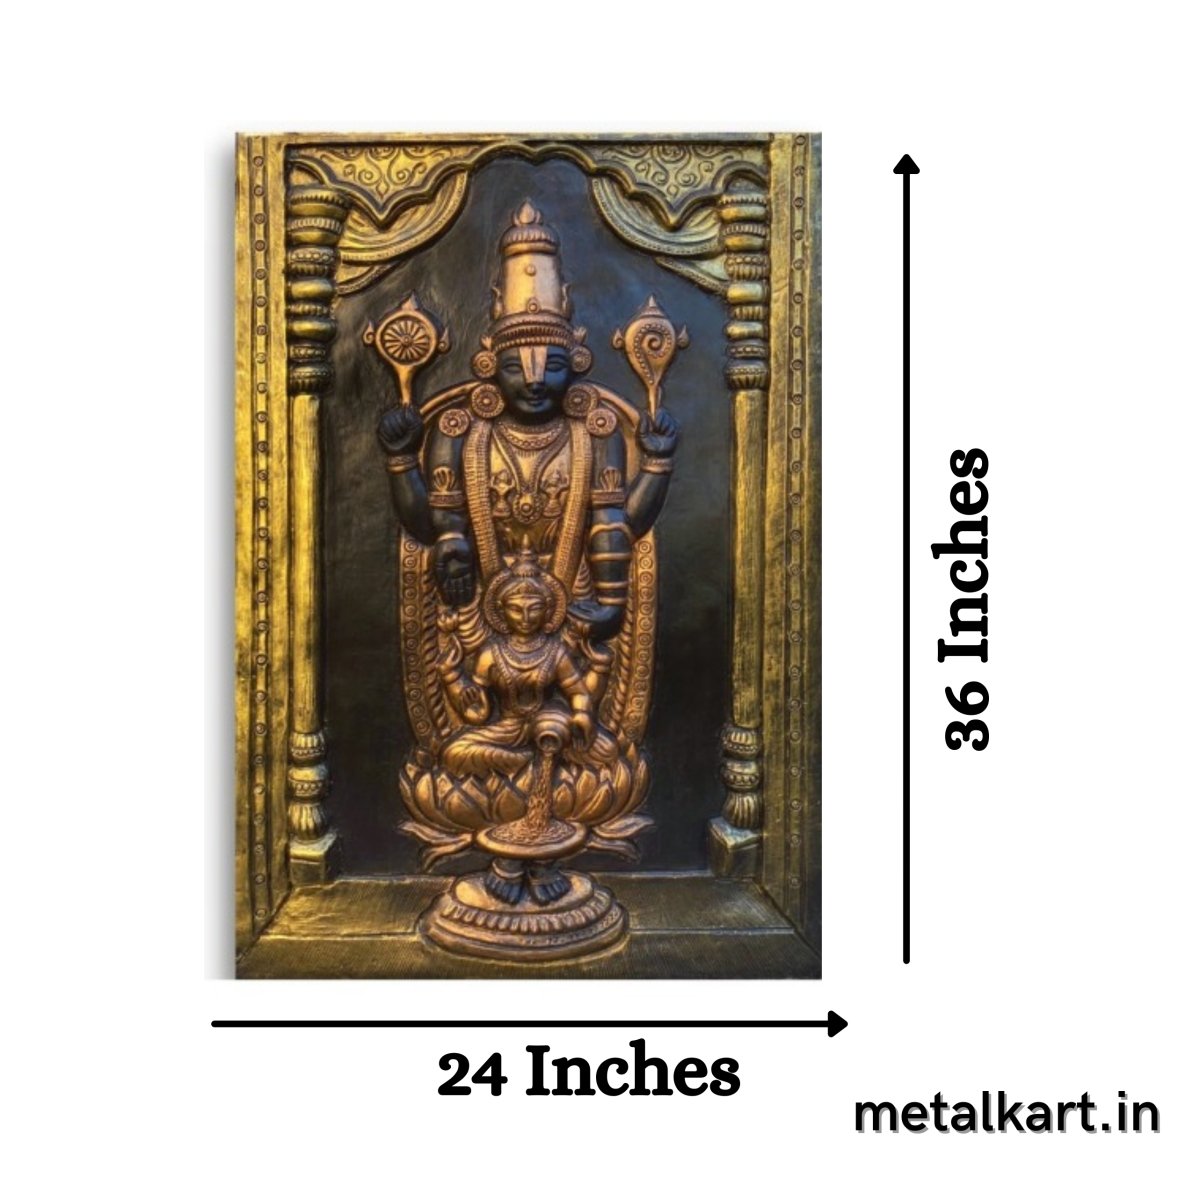 Sri Tirupati Balaji with Lakshmi Mata 3D Wall Sculpture (36 x 24 Inches)